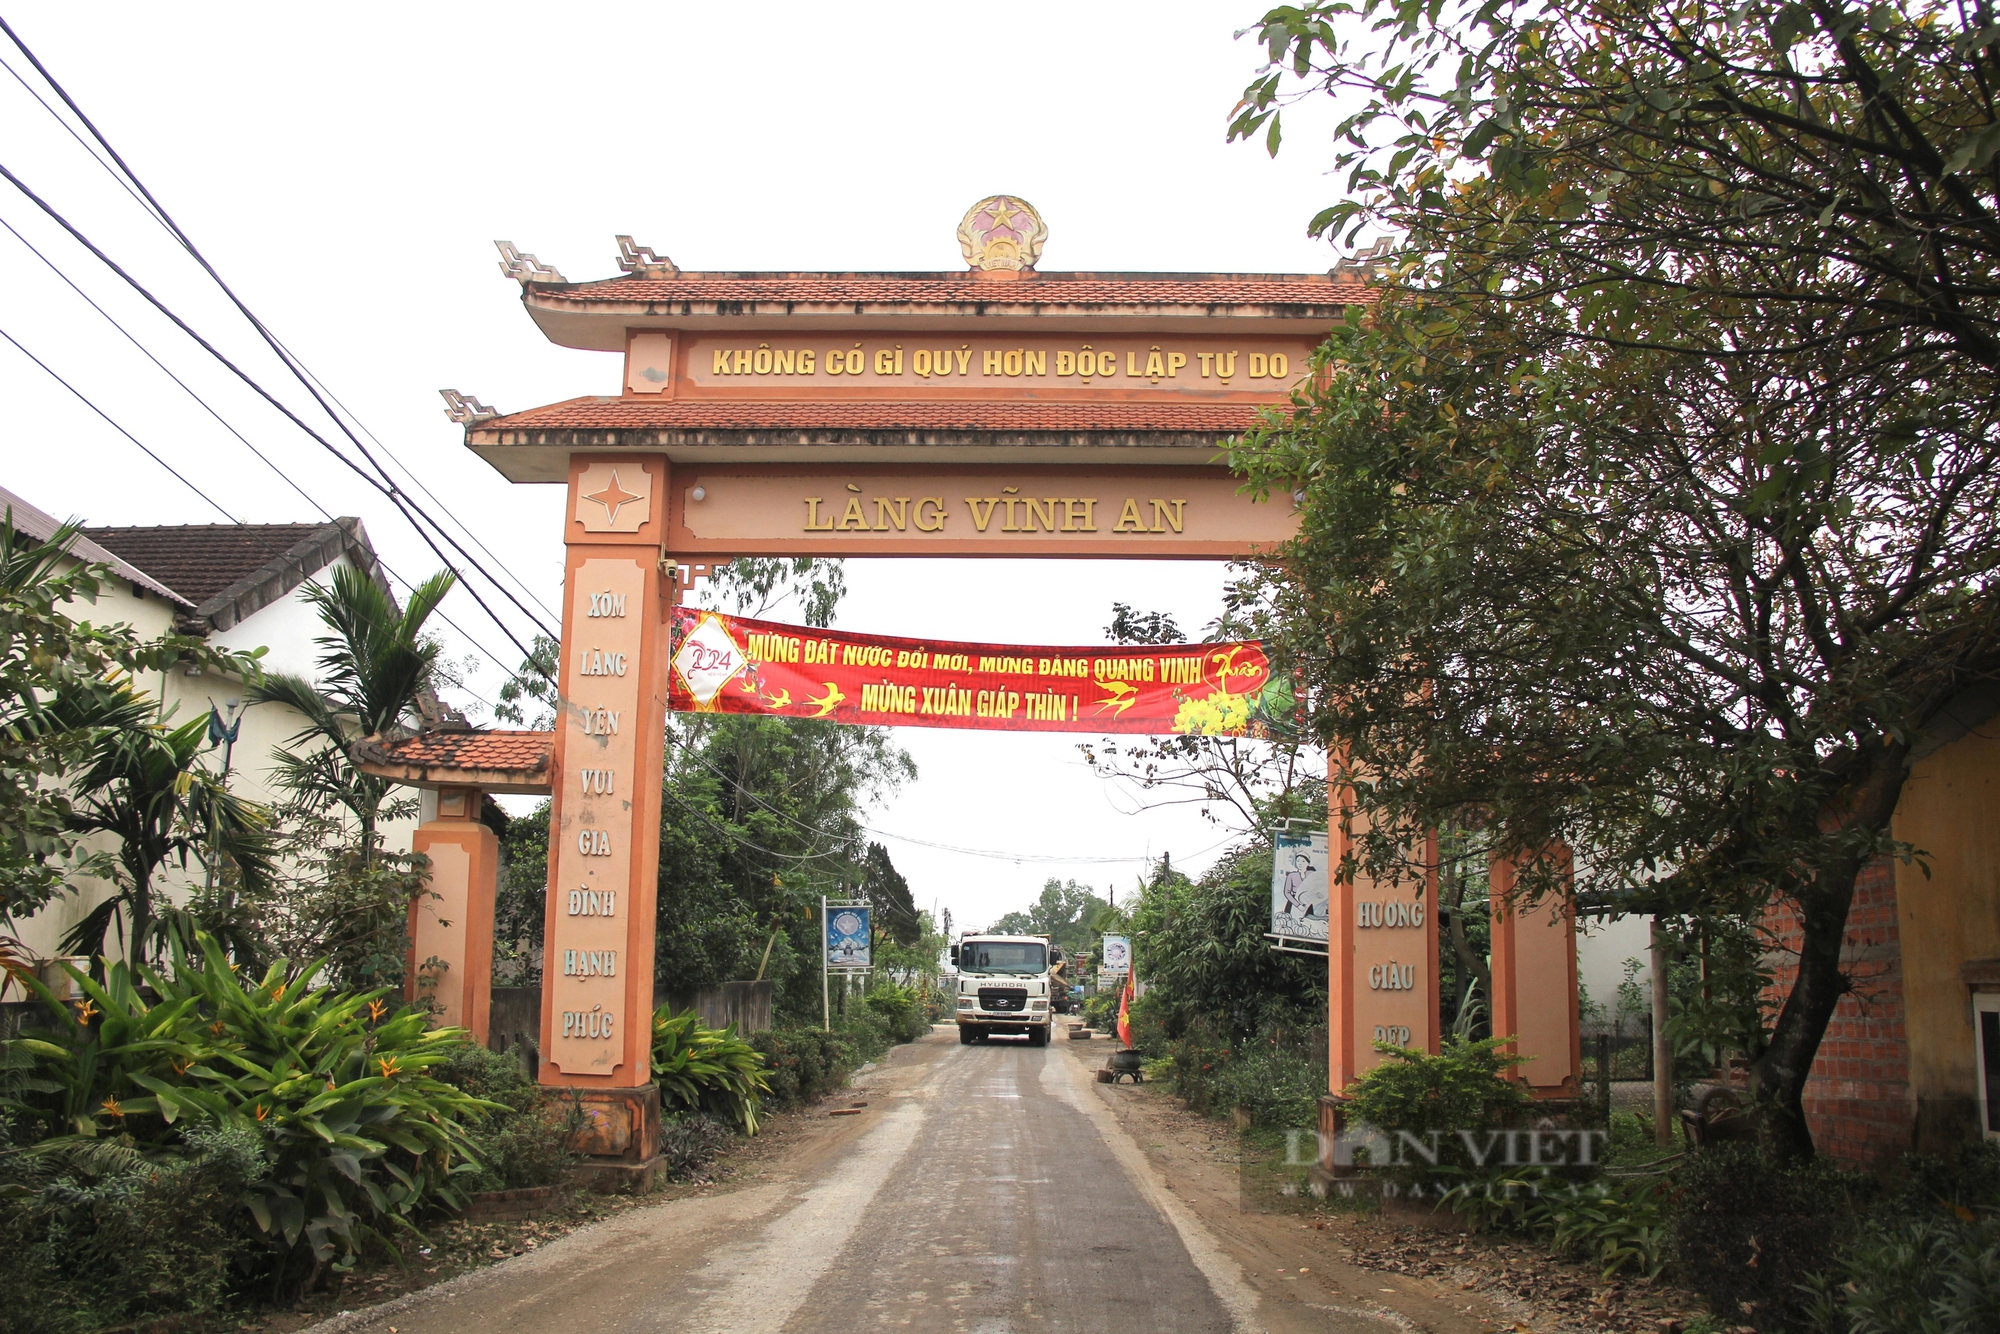 Xe tải “náo loạn” đường làng ở Quảng Trị khiến người dân bức xúc- Ảnh 1.